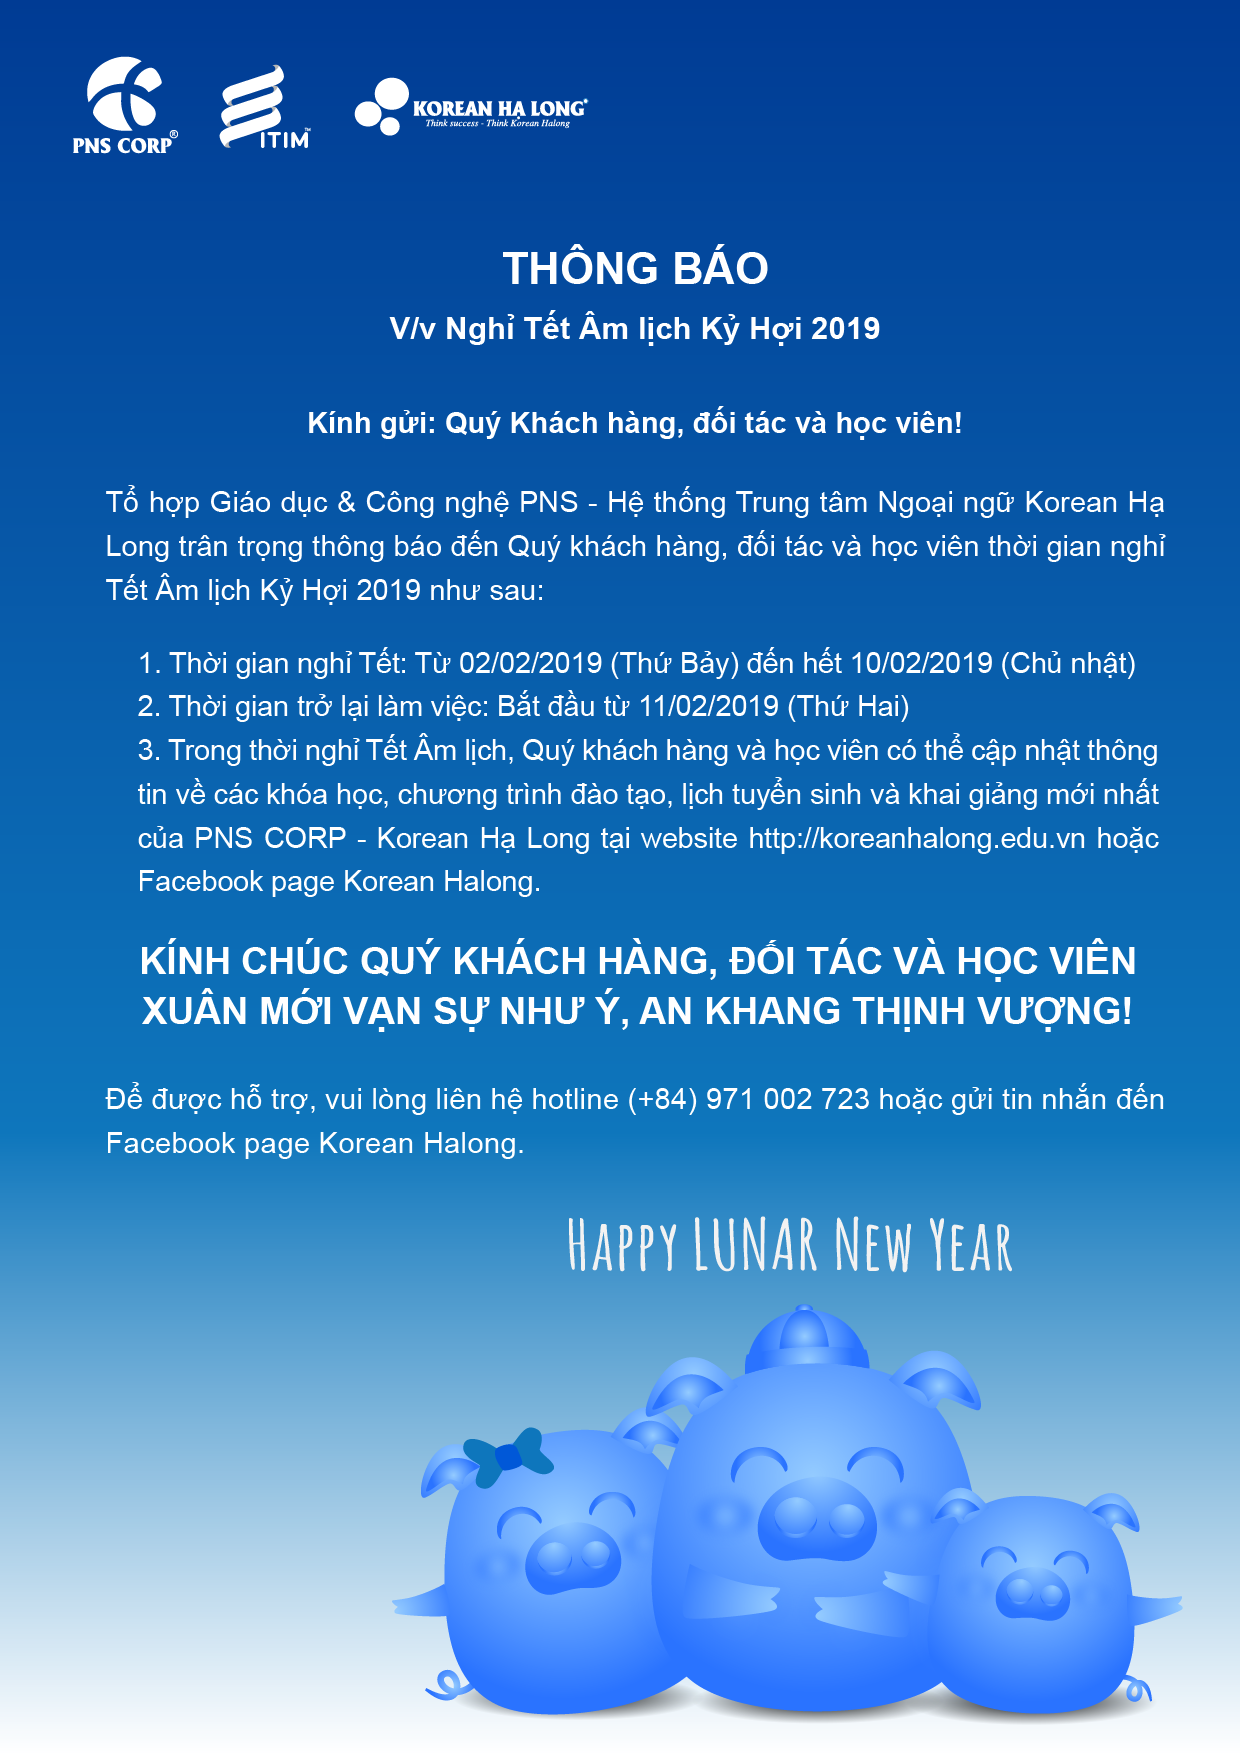 Thông báo lịch nghỉ Tết Âm lịch Kỷ Hợi 2019 - PNS CORP & Korean Hạ Long